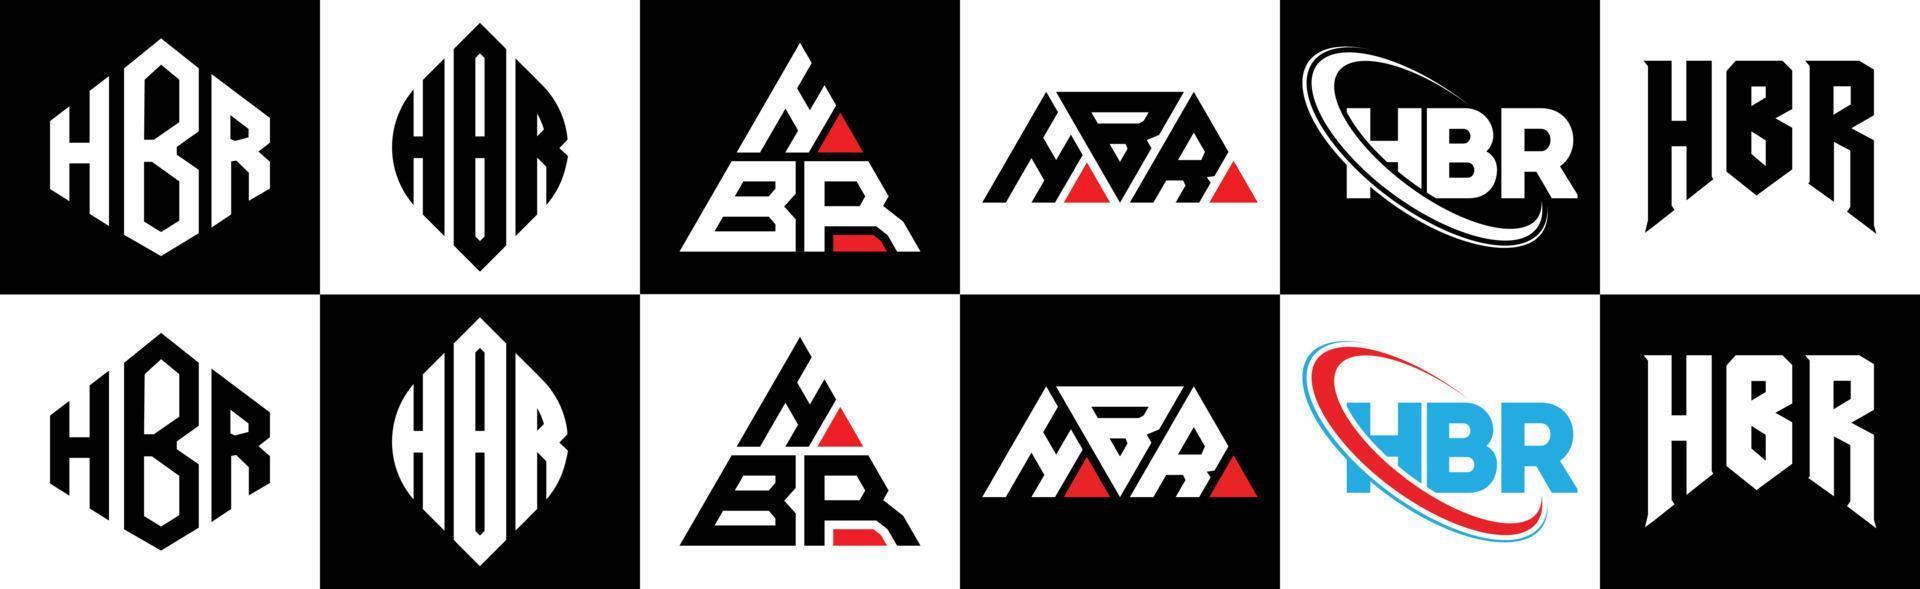 hbr-Buchstaben-Logo-Design in sechs Stilen. hbr polygon, kreis, dreieck, sechseck, flacher und einfacher stil mit schwarz-weißem buchstabenlogo in einer zeichenfläche. HBR minimalistisches und klassisches Logo vektor